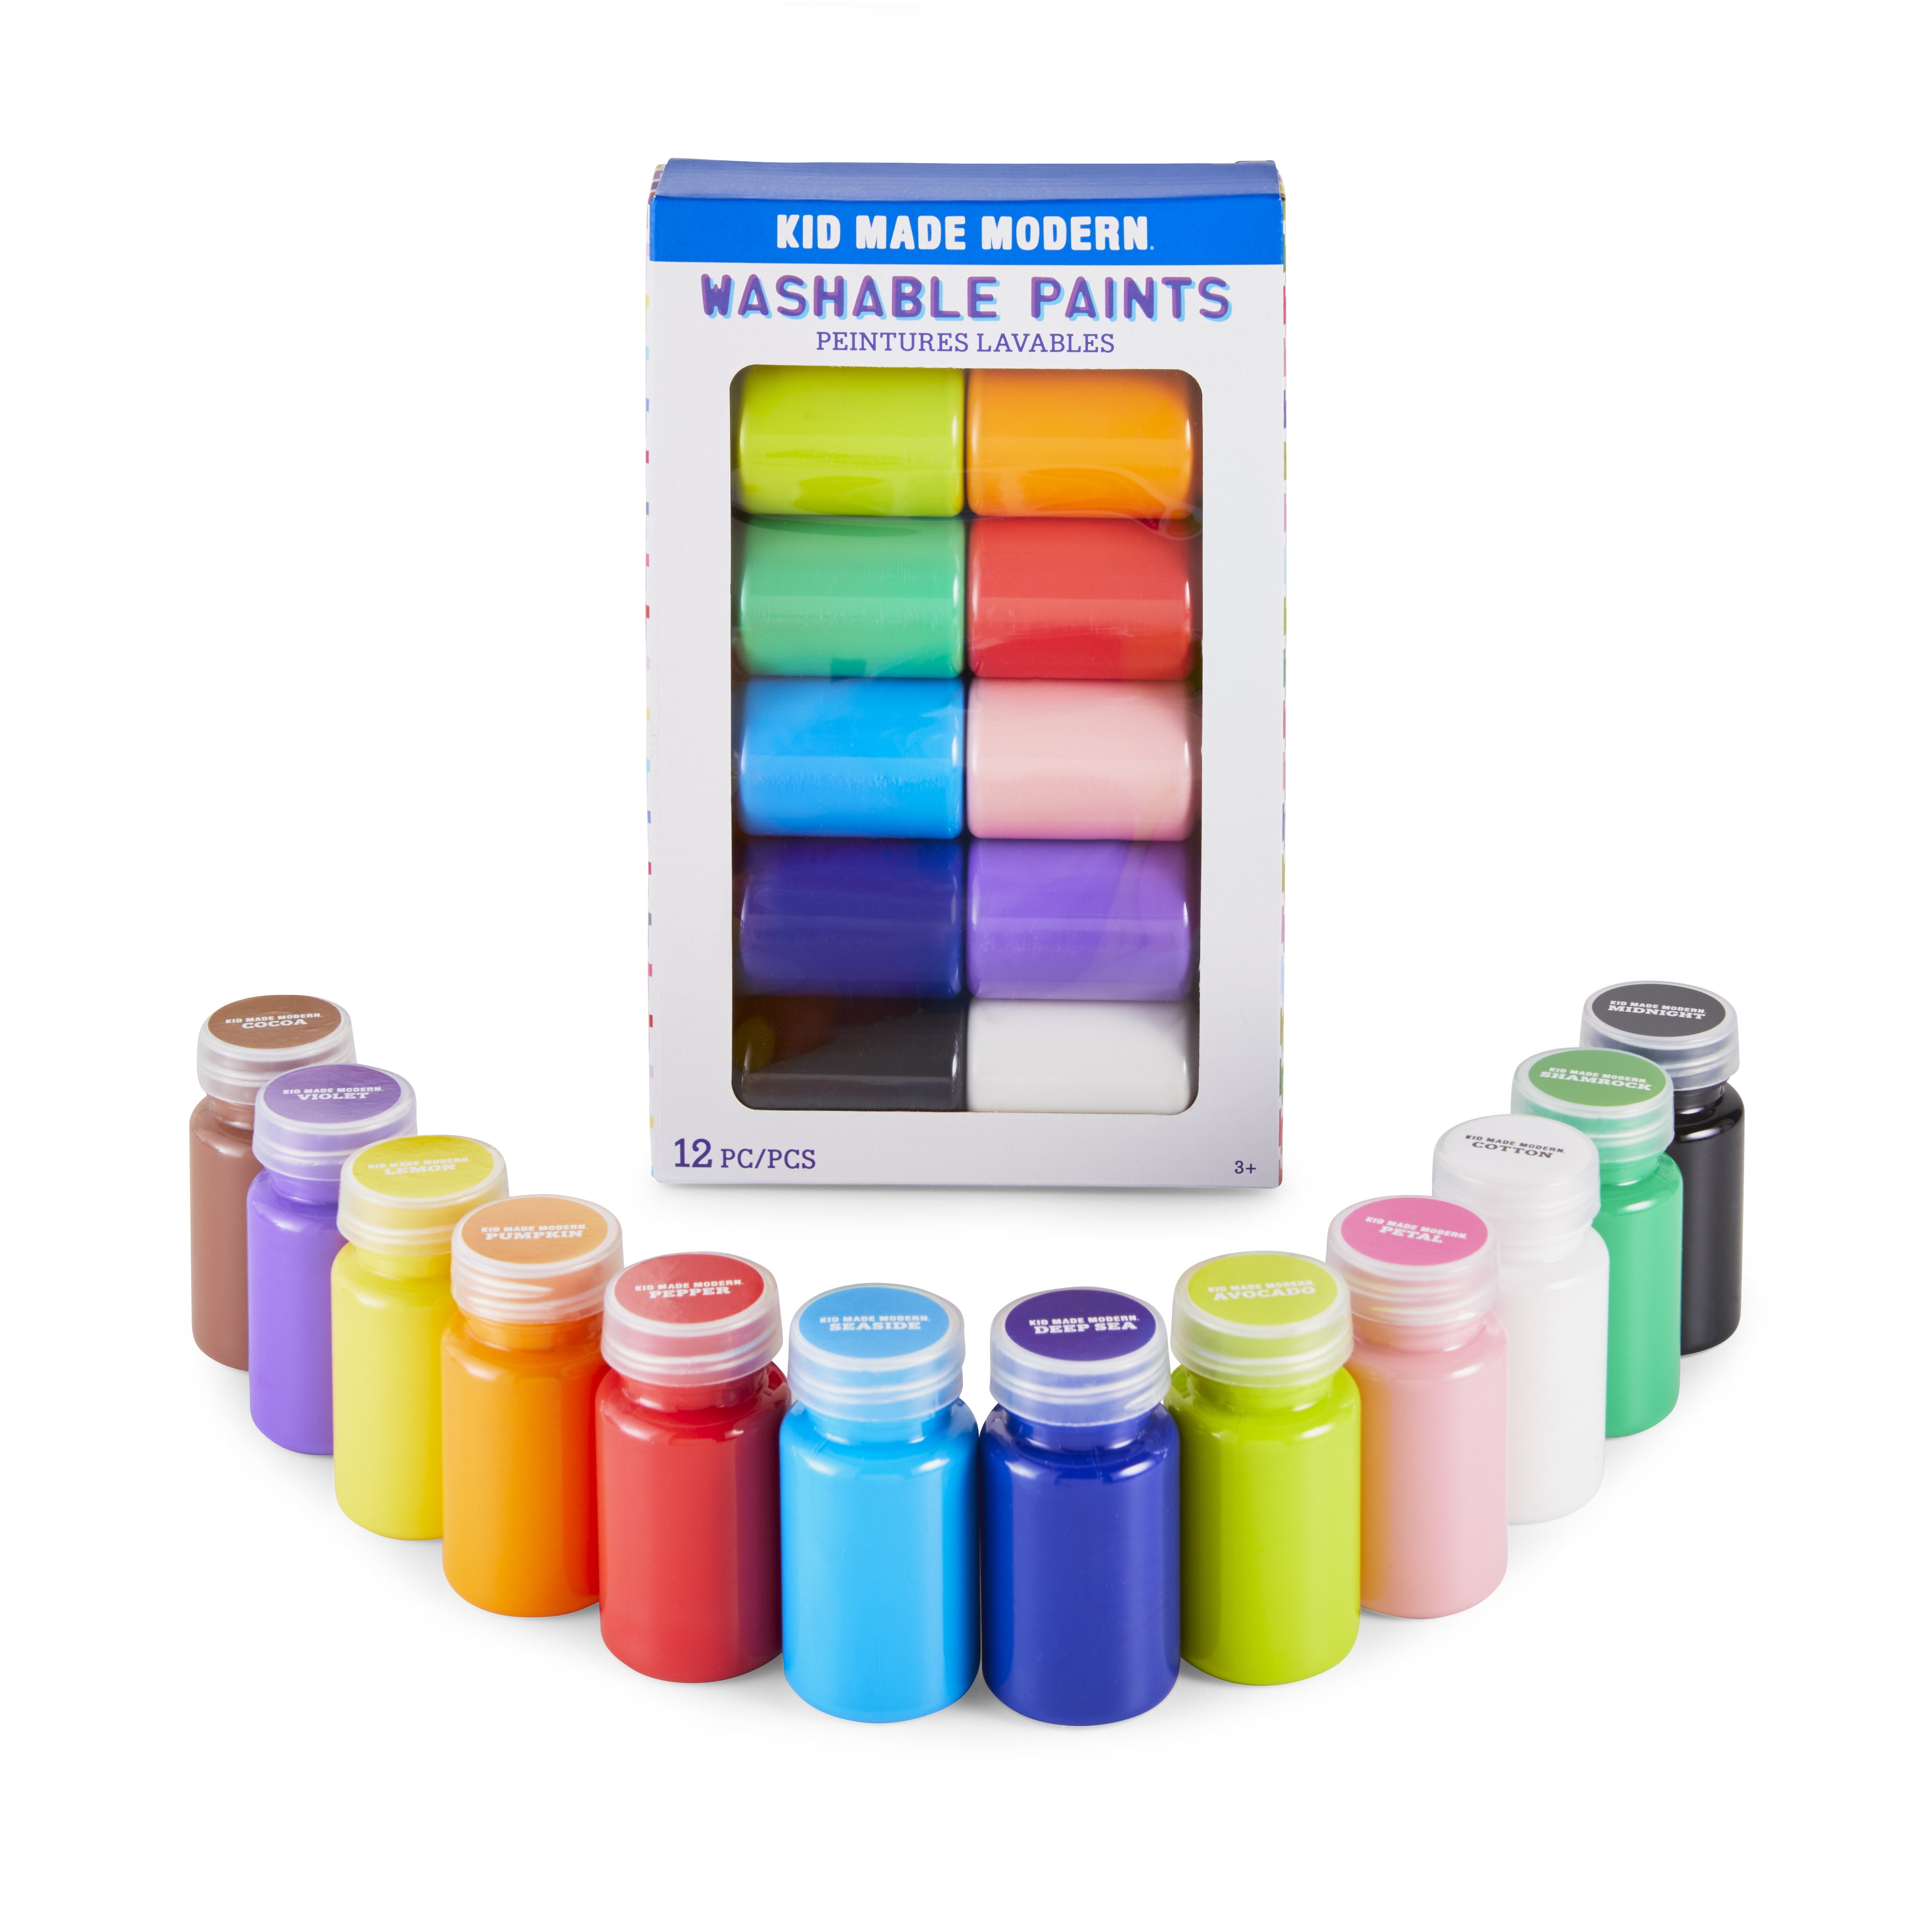 Lartique Watercolor Paint Set, 24 Color Liquid Watercolor Paint, with 3  Paint Brushes and Paint Palette